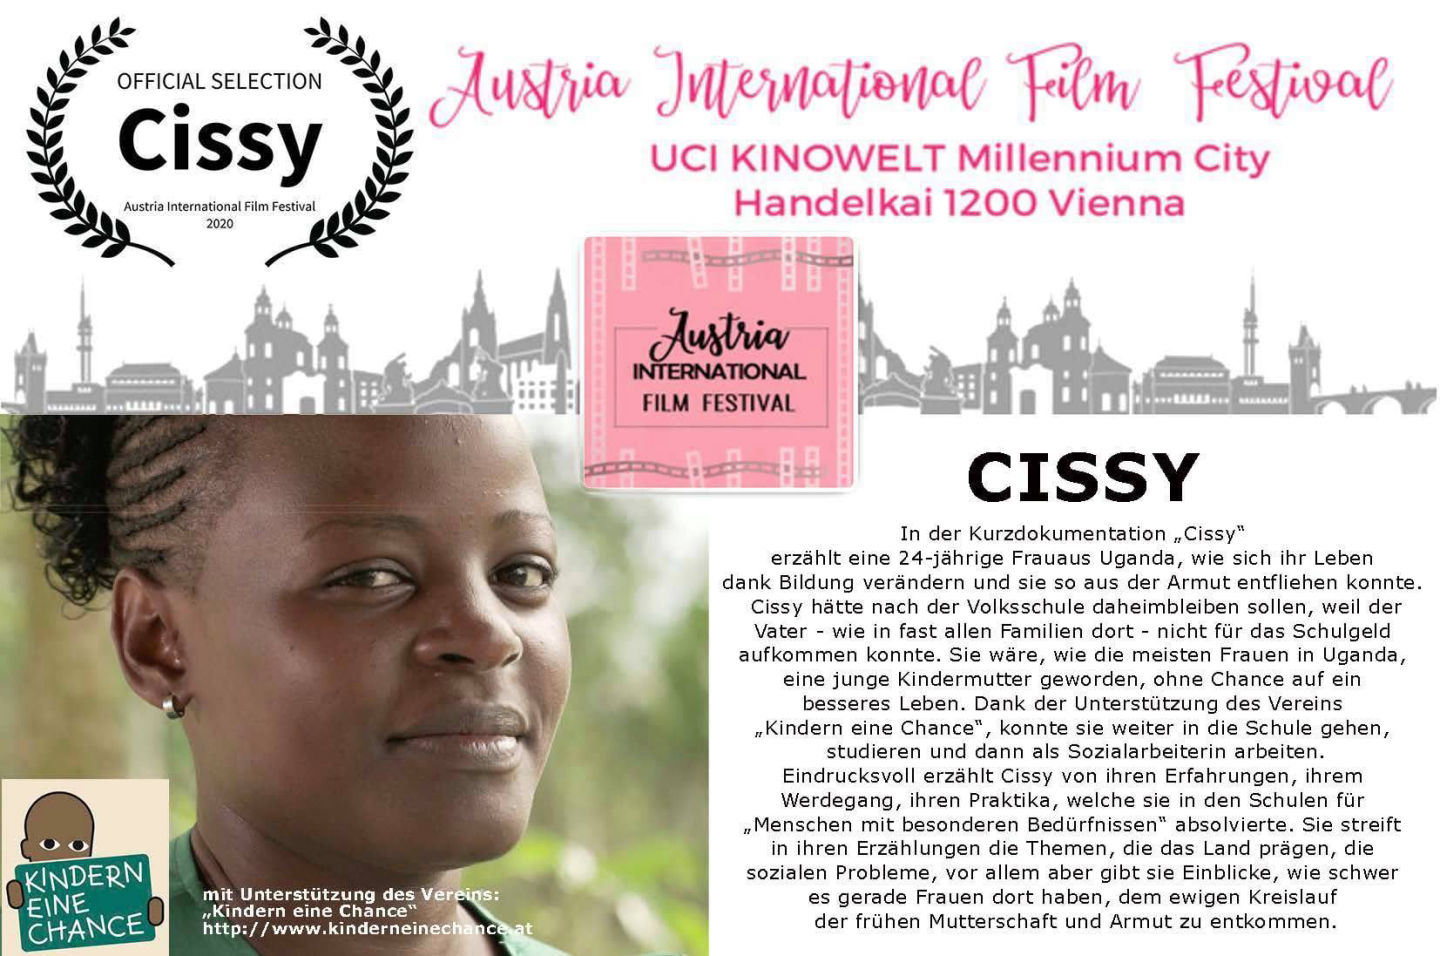 n der Kurzdokumentation „Cissy“ erzählt eine junge Frau von 24 Jahren aus Uganda, wie sich ihr Leben dank Bildung verändert hat und wie sie der Armut entkommen konnte.